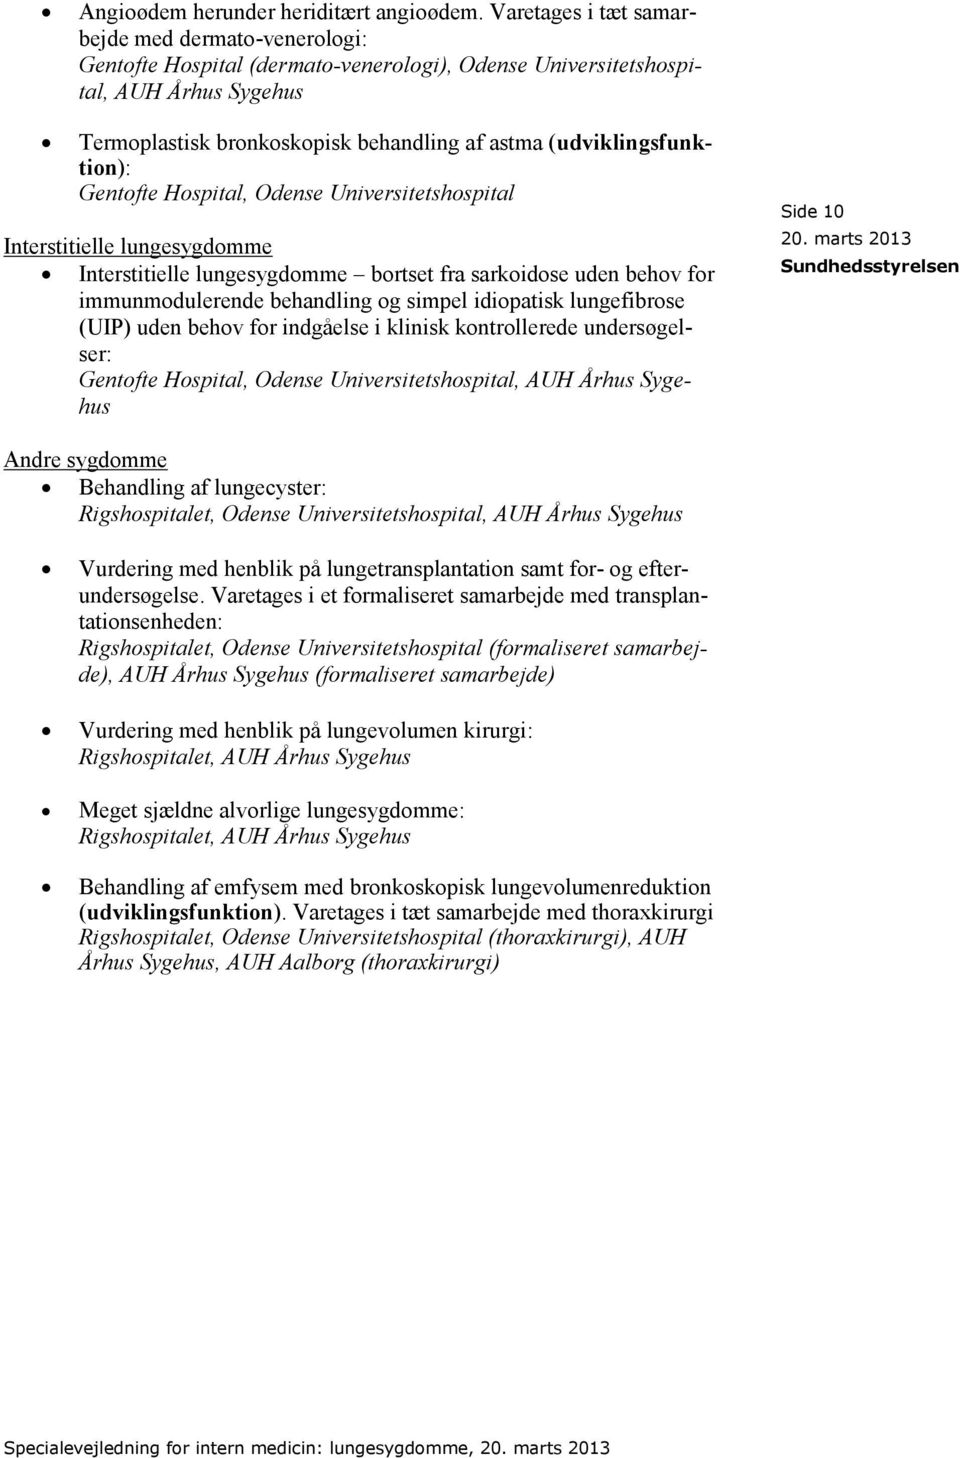 (udviklingsfunktion): Gentofte Hospital, Odense Universitetshospital Interstitielle lungesygdomme Interstitielle lungesygdomme bortset fra sarkoidose uden behov for immunmodulerende behandling og